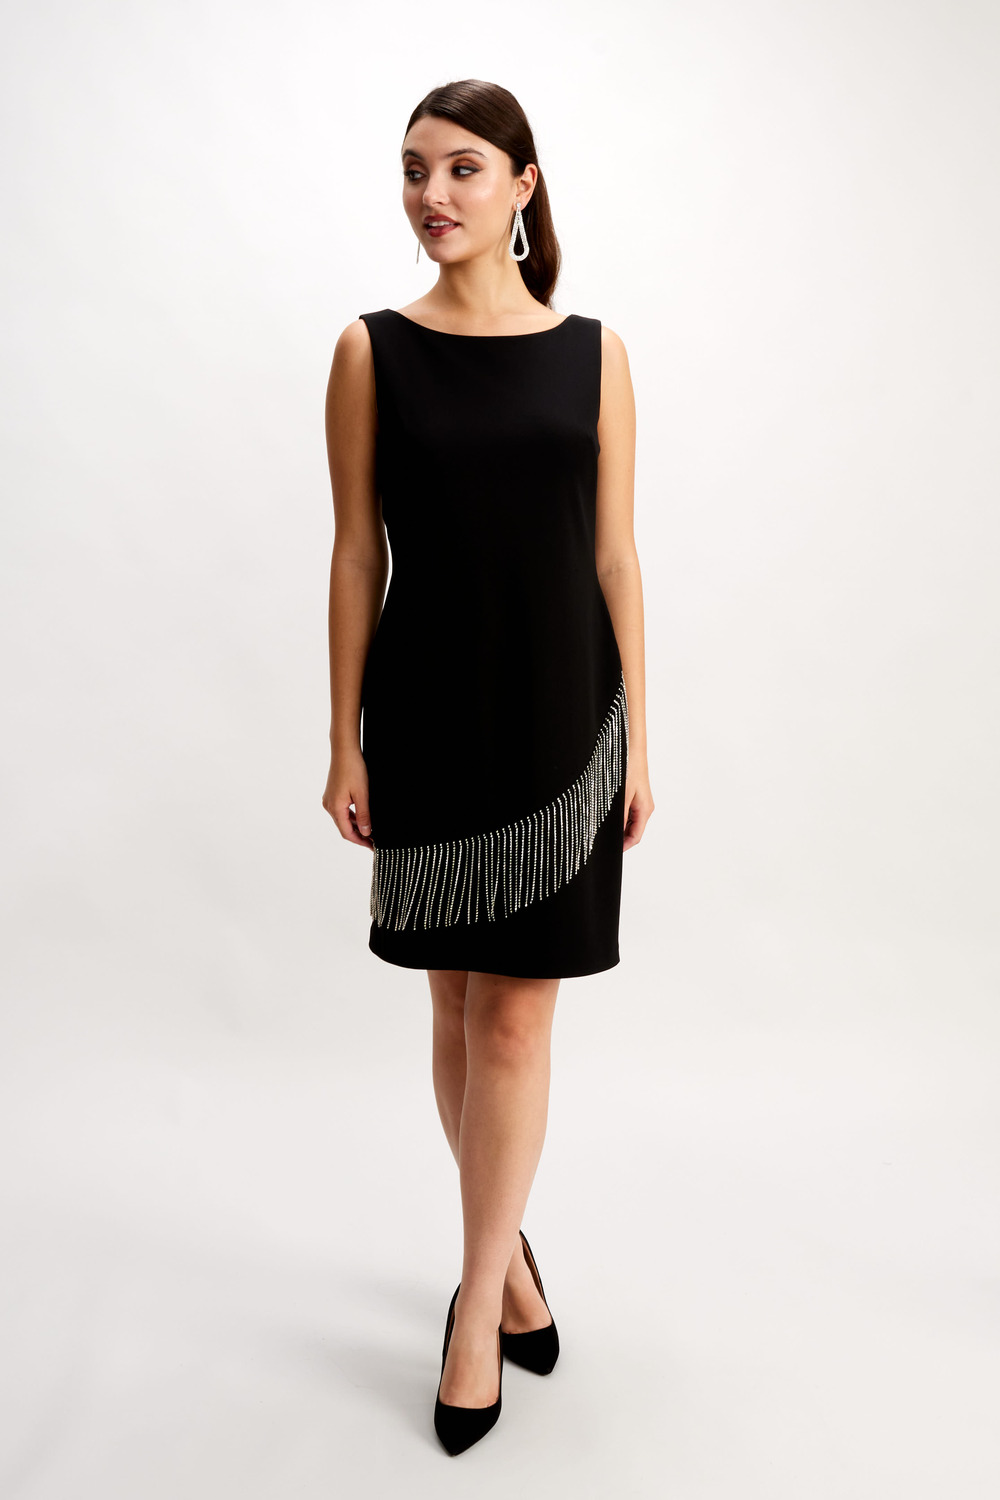 Rhinestone Fringe Dress Style 248204K . Black